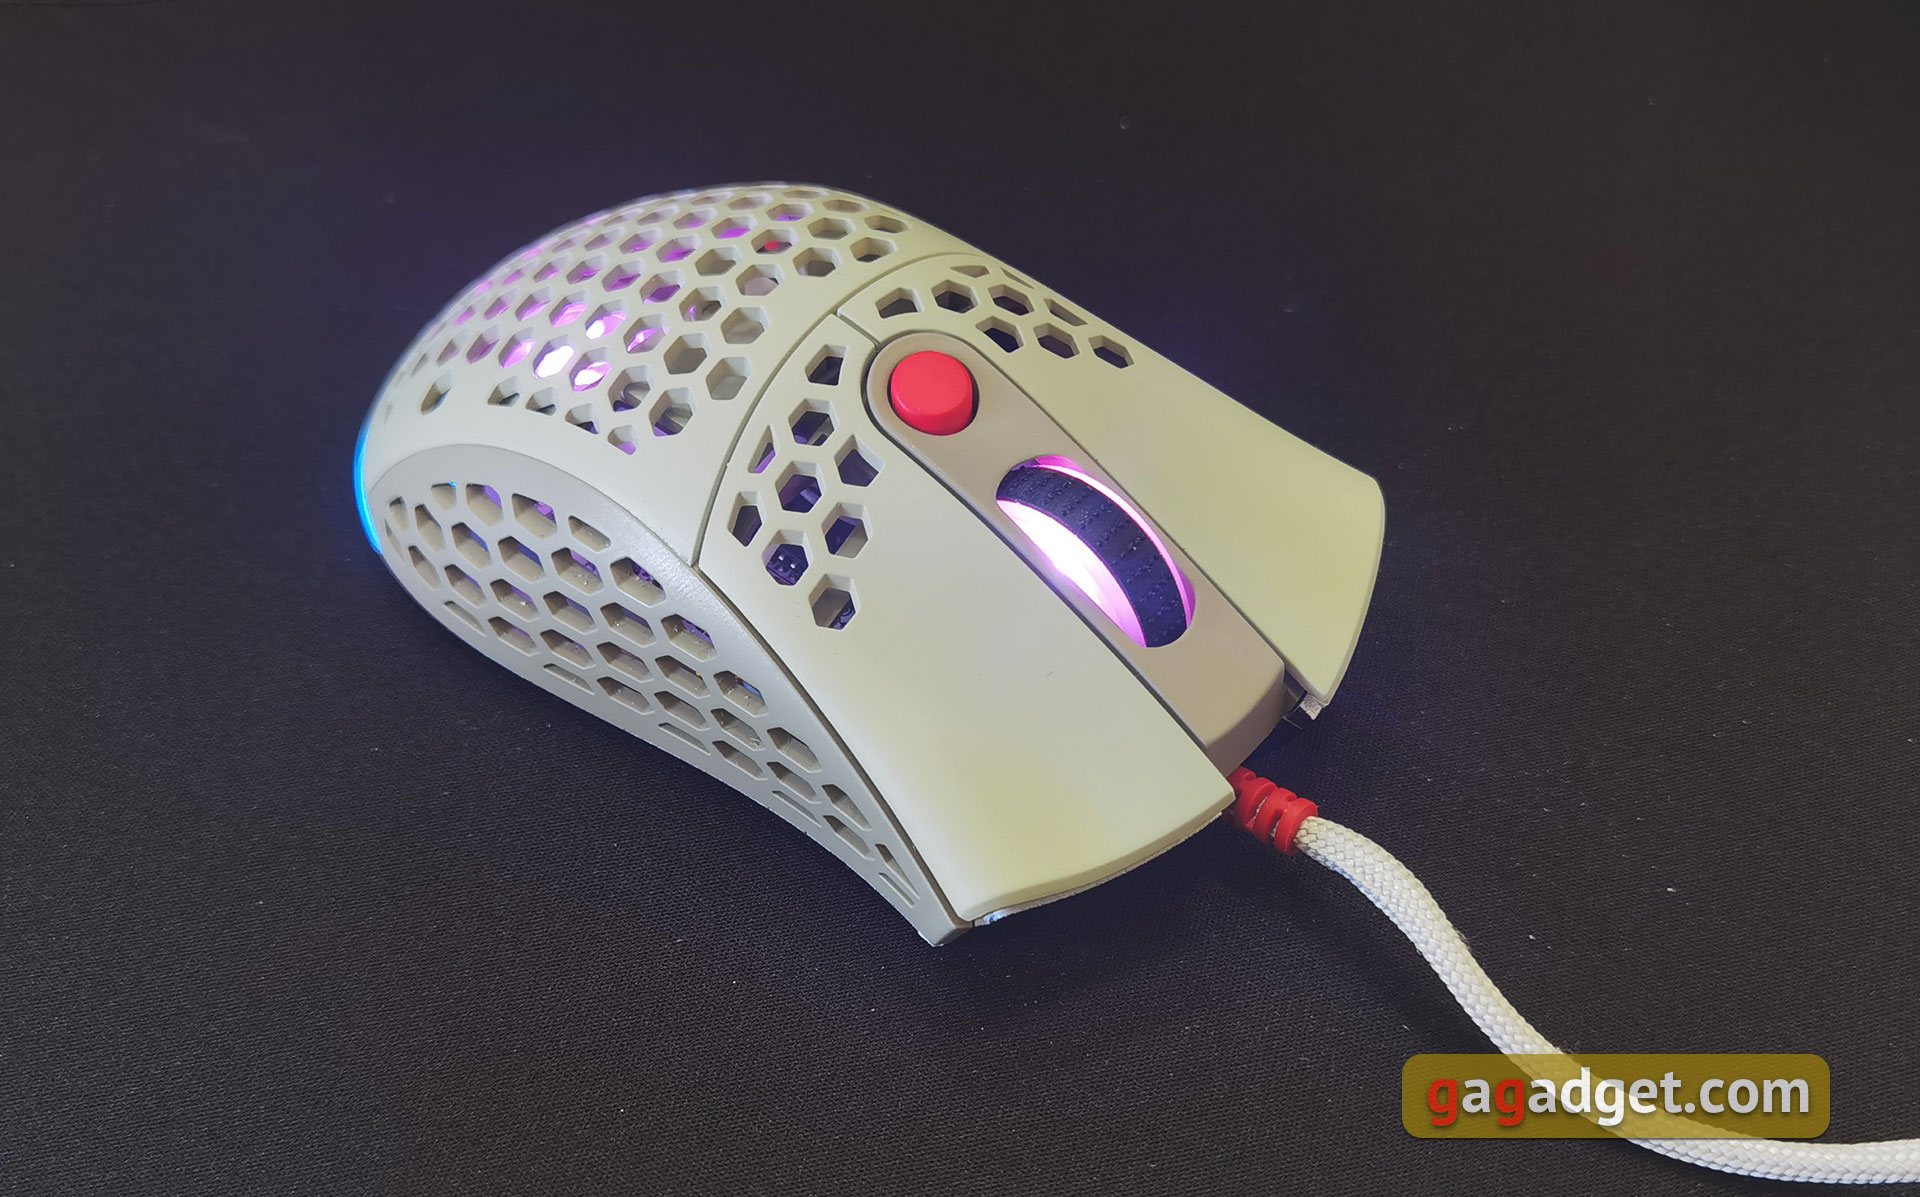 2E Gaming HyperSpeed Pro Überblick: Eine leichte Gaming-Maus mit einem großartigen Sensor-6